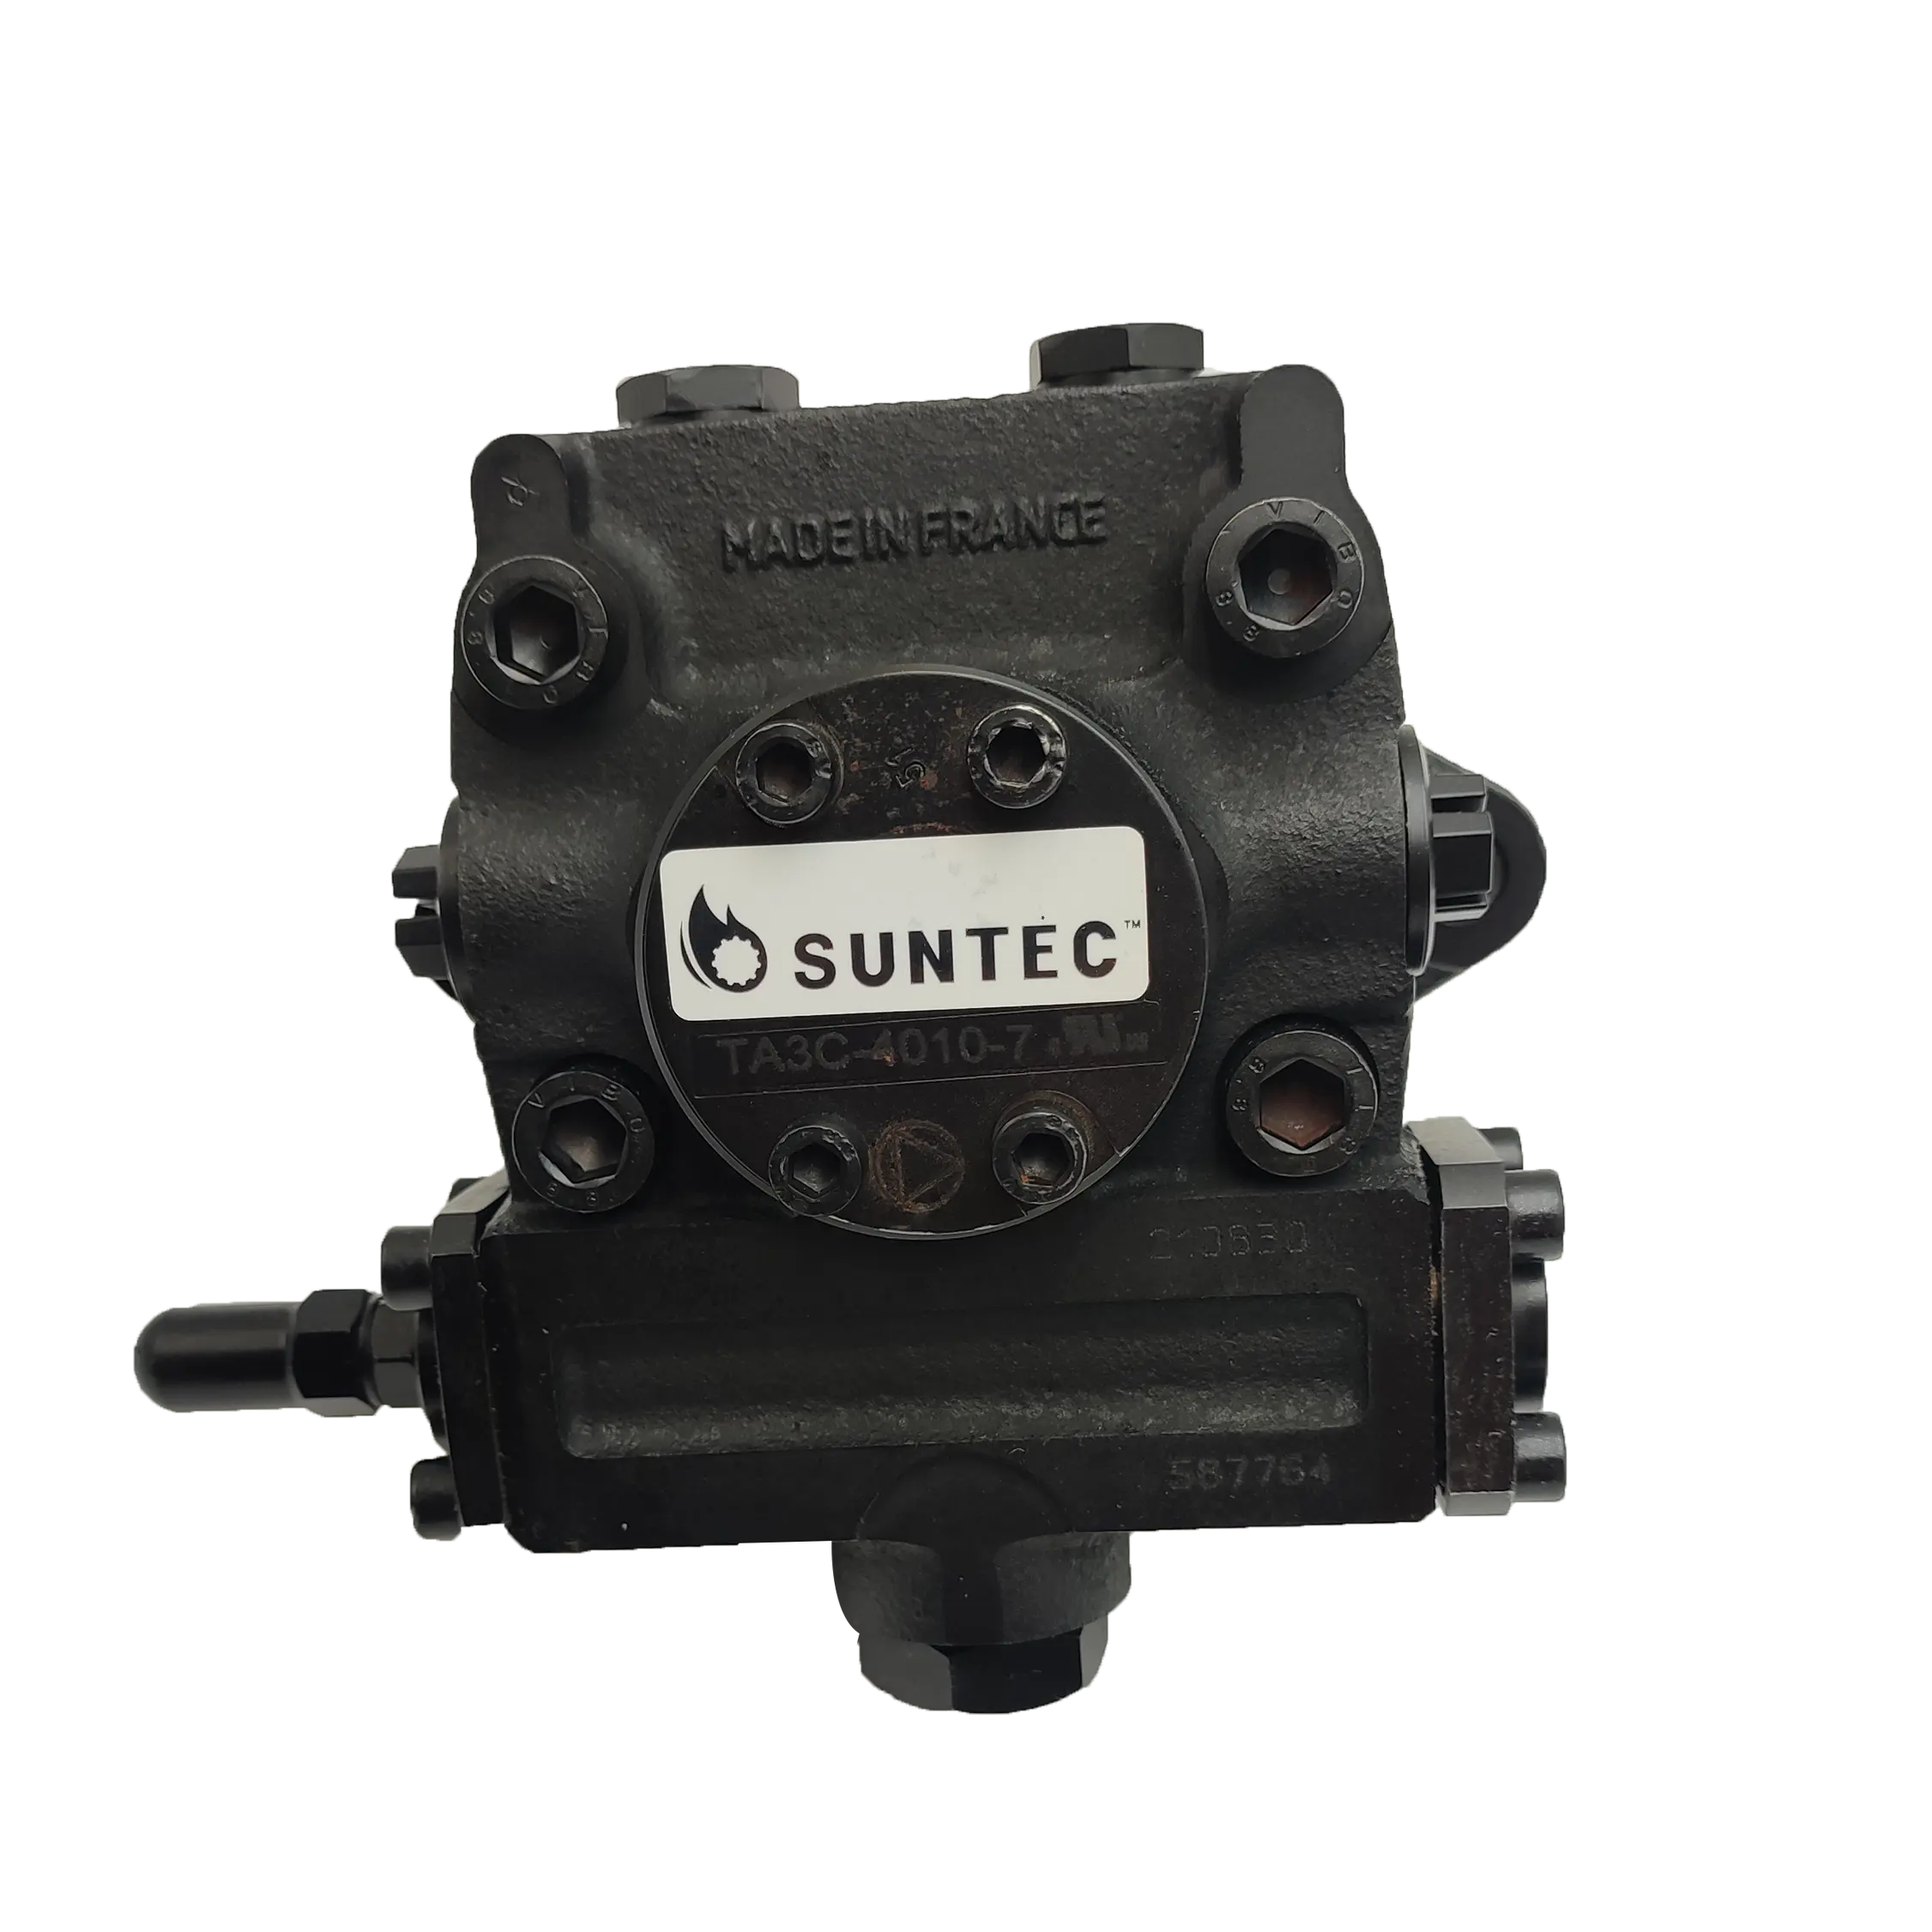 بسعر المصنع Suntec frantec TA3C 7 مضخات وقود زيتية للاحتراق الصناعي